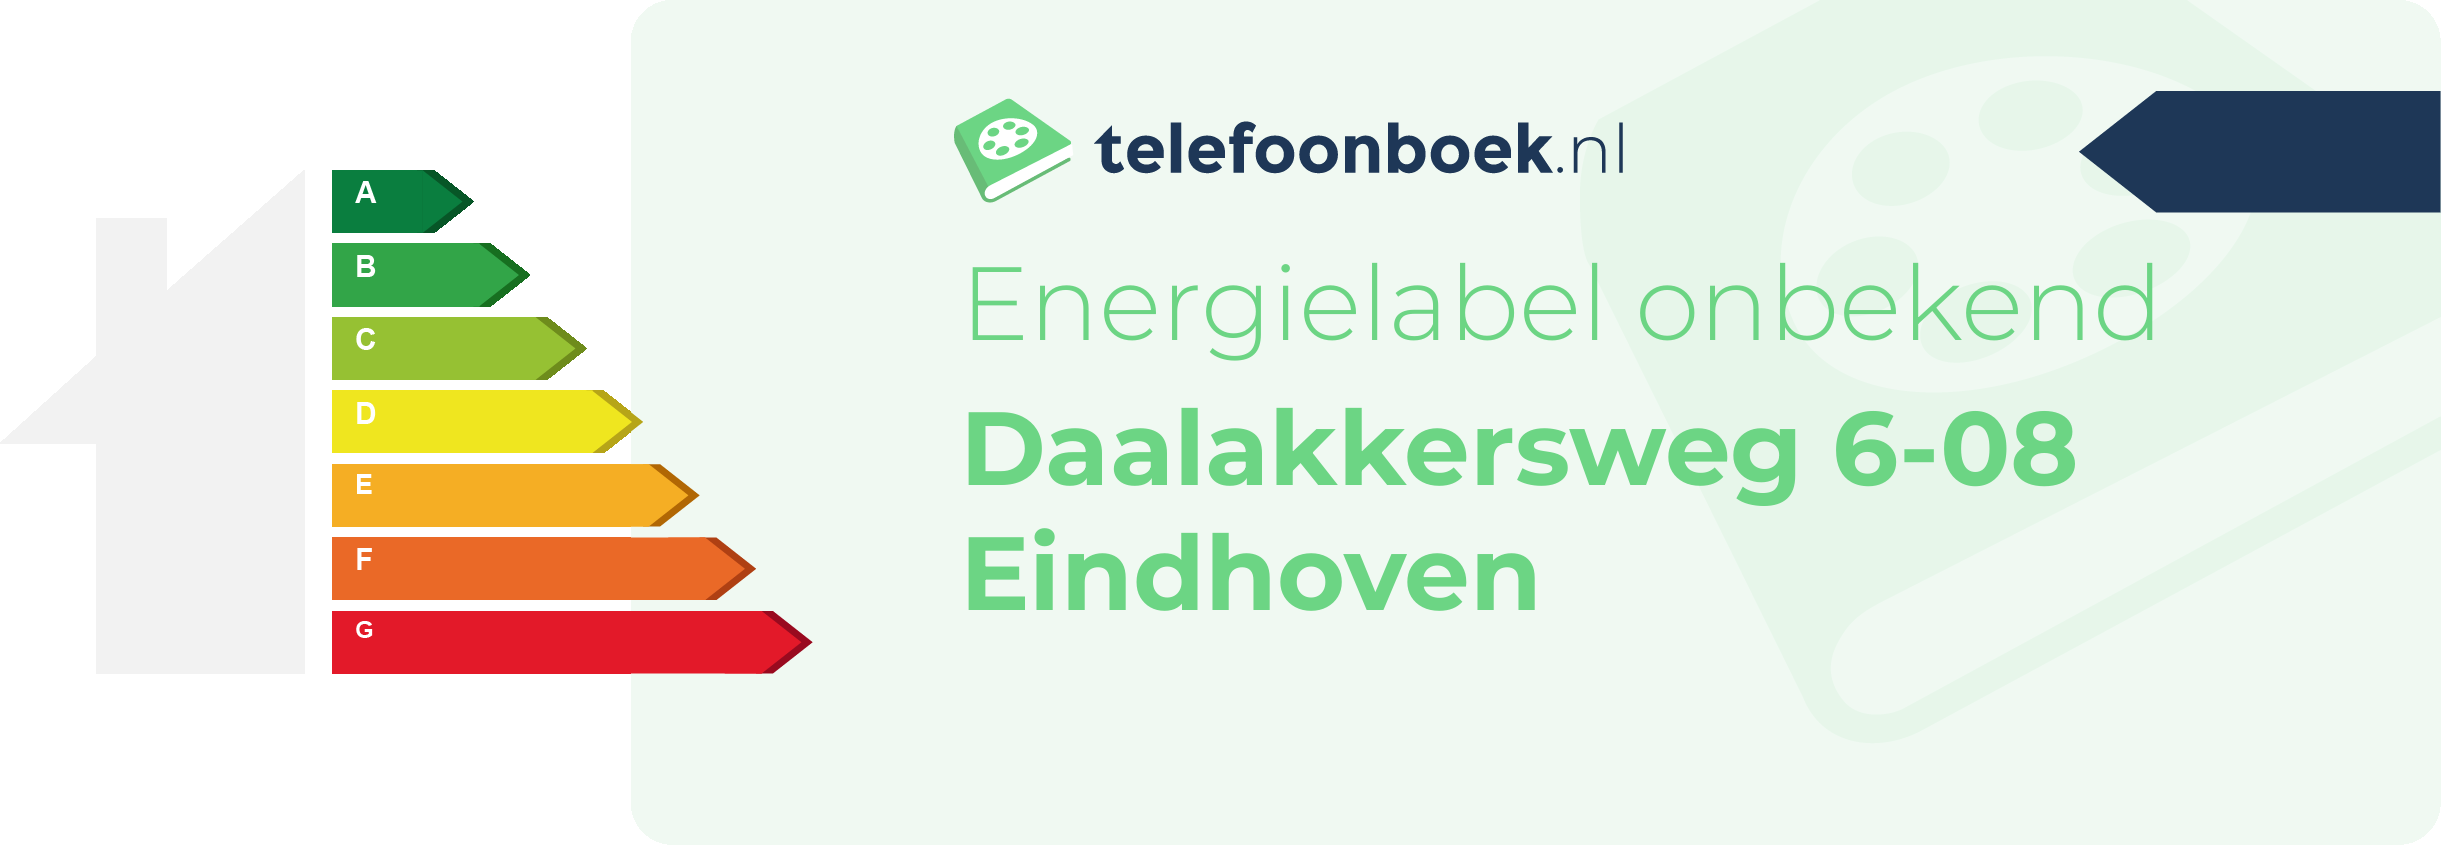 Energielabel Daalakkersweg 6-08 Eindhoven